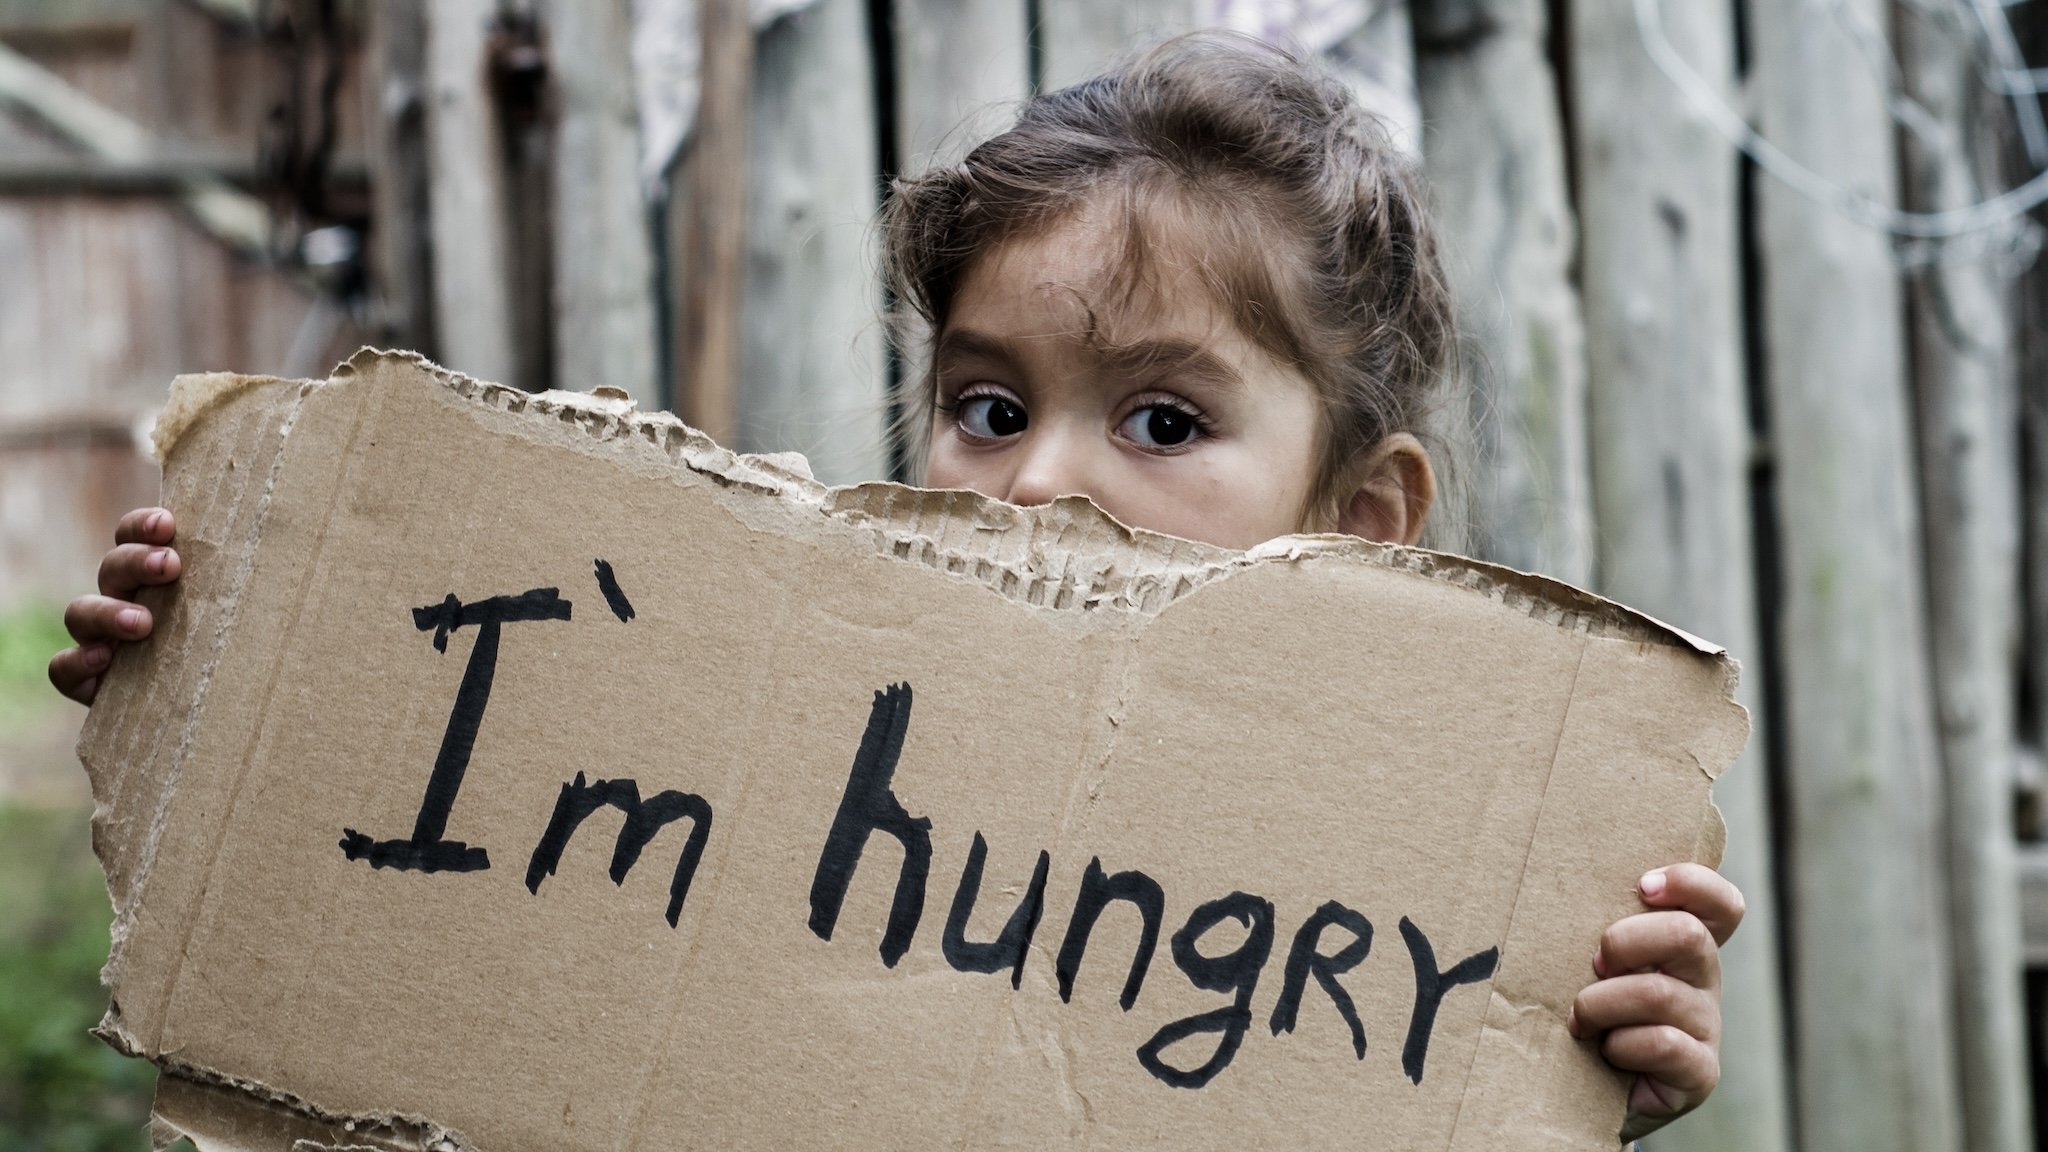 Mädchen hält Pappschild mit der Aufschrift "I'm hungry" in den Händen